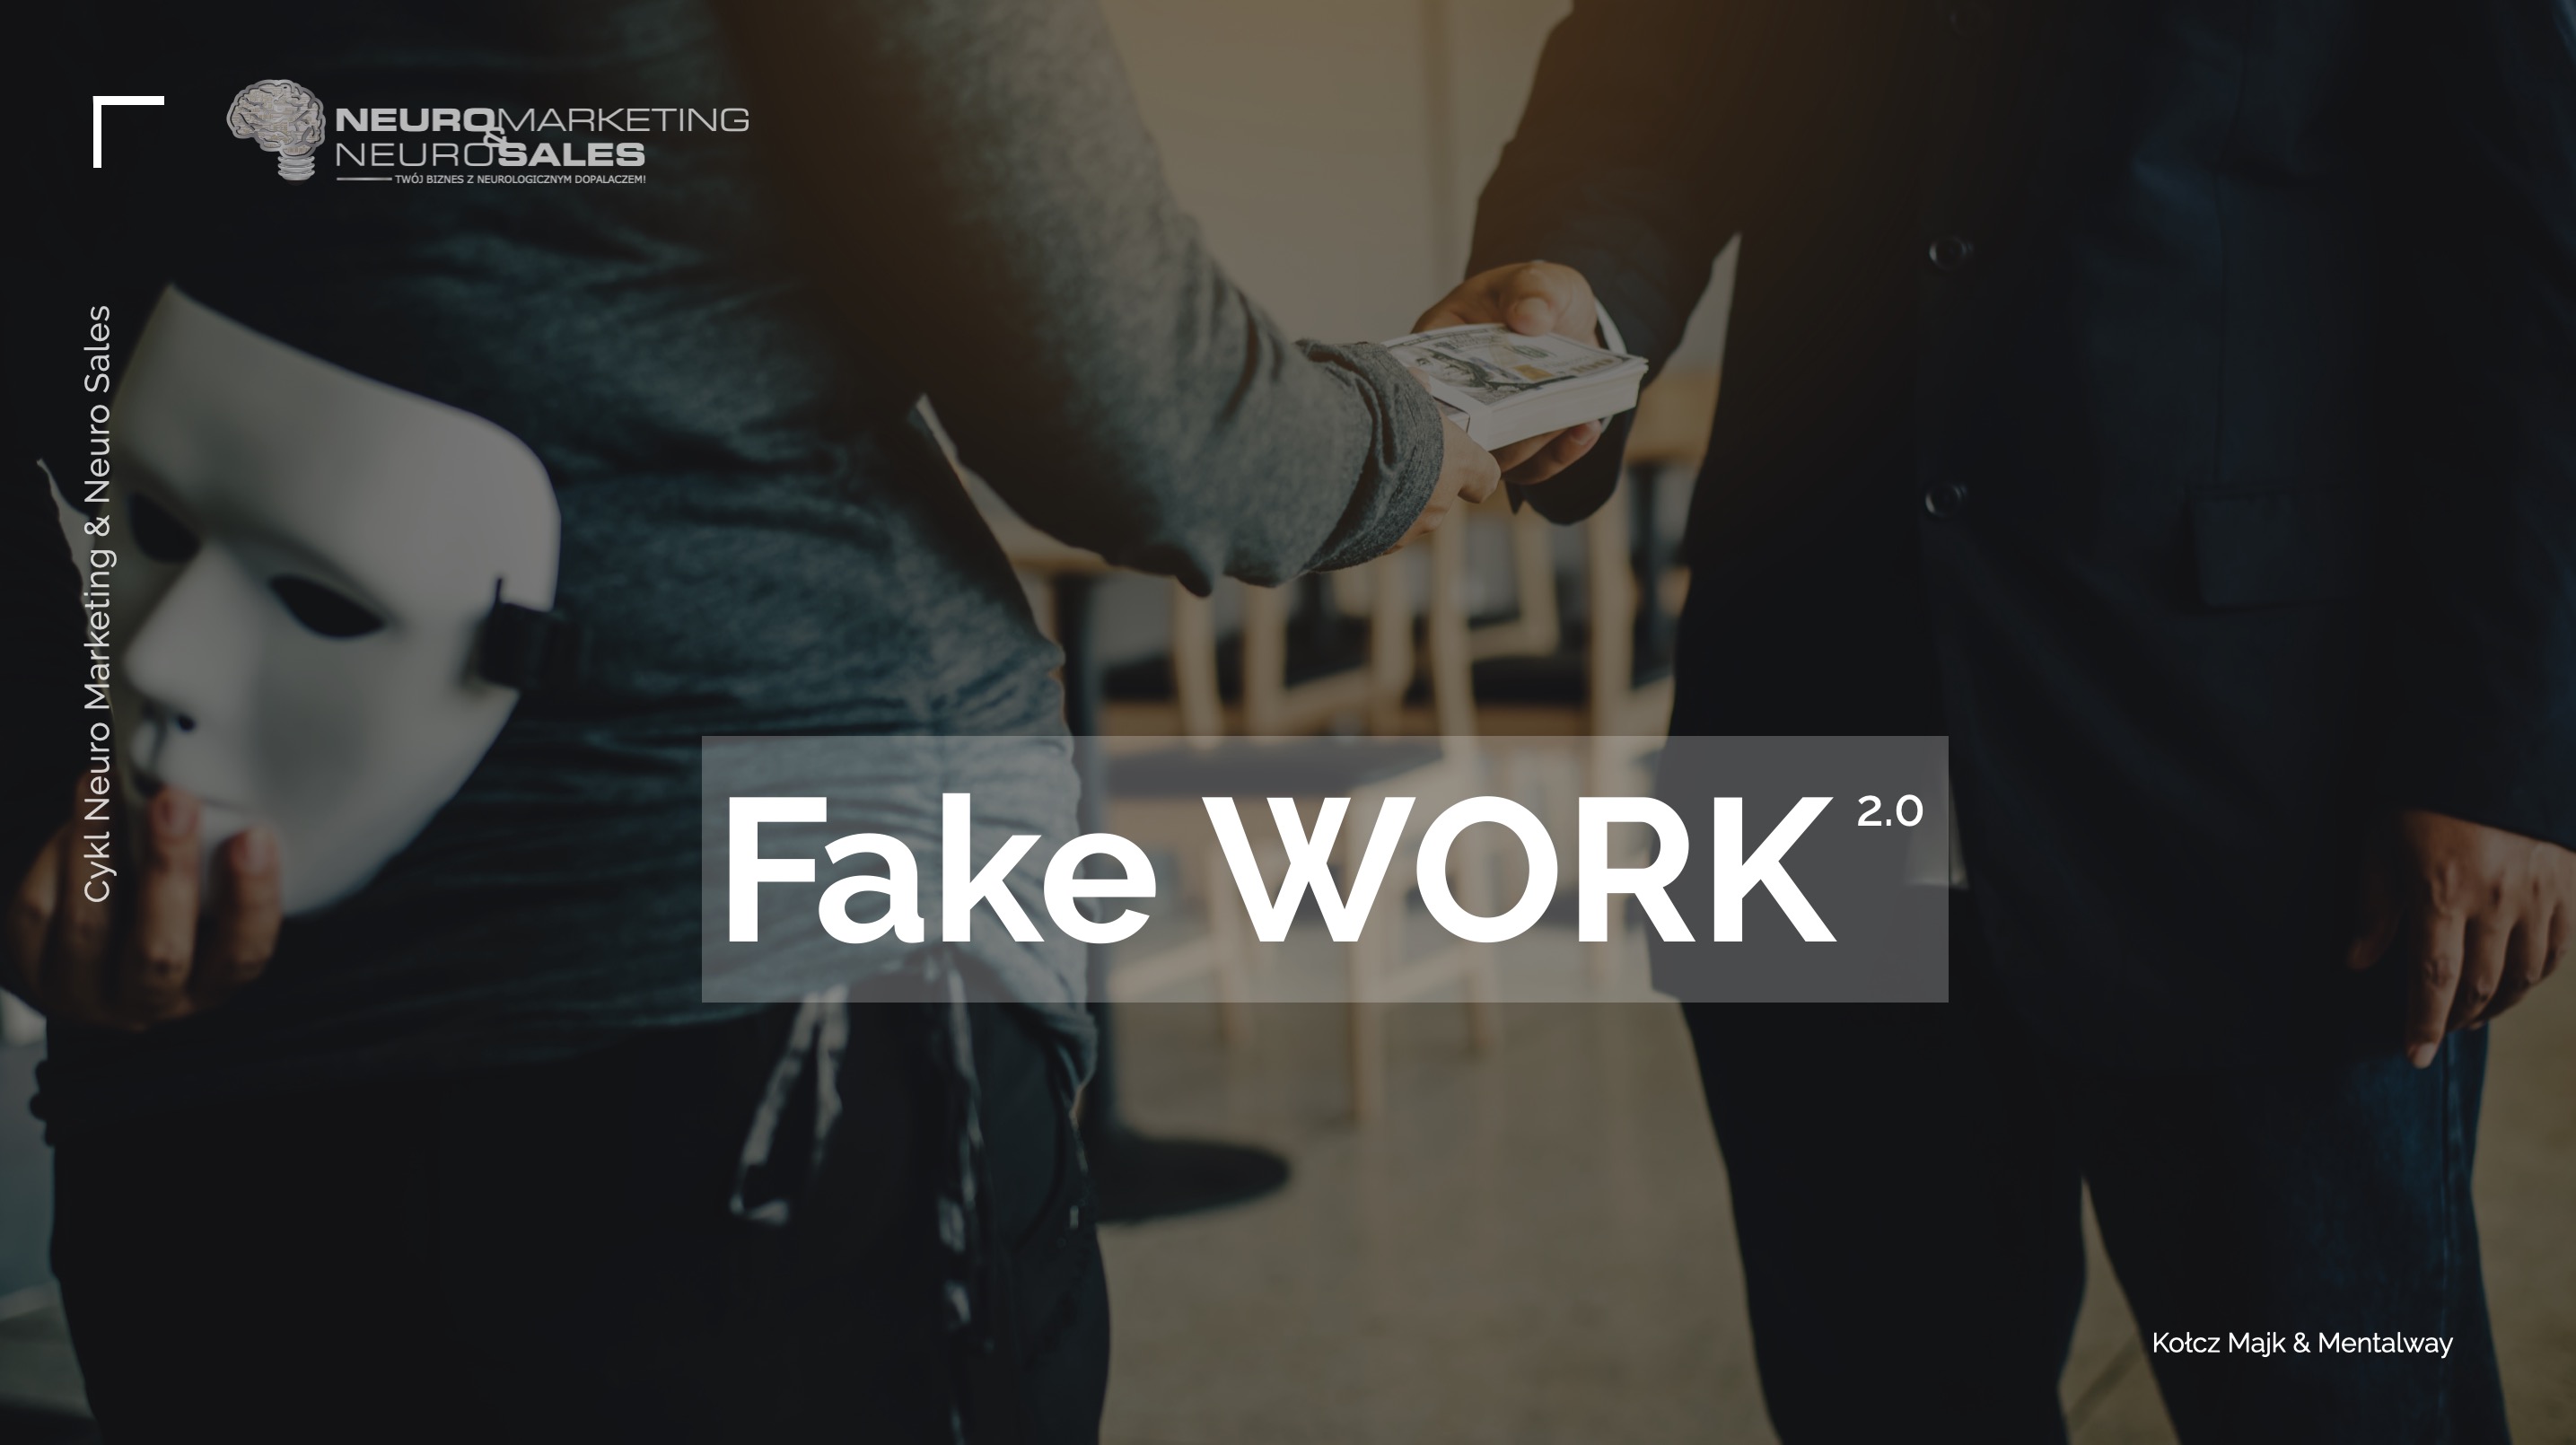 Fake WORK 2.0 - biznesowo-życiowy warsztat z Michałem "Kołczem Majkiem" Wawrzyniakiem